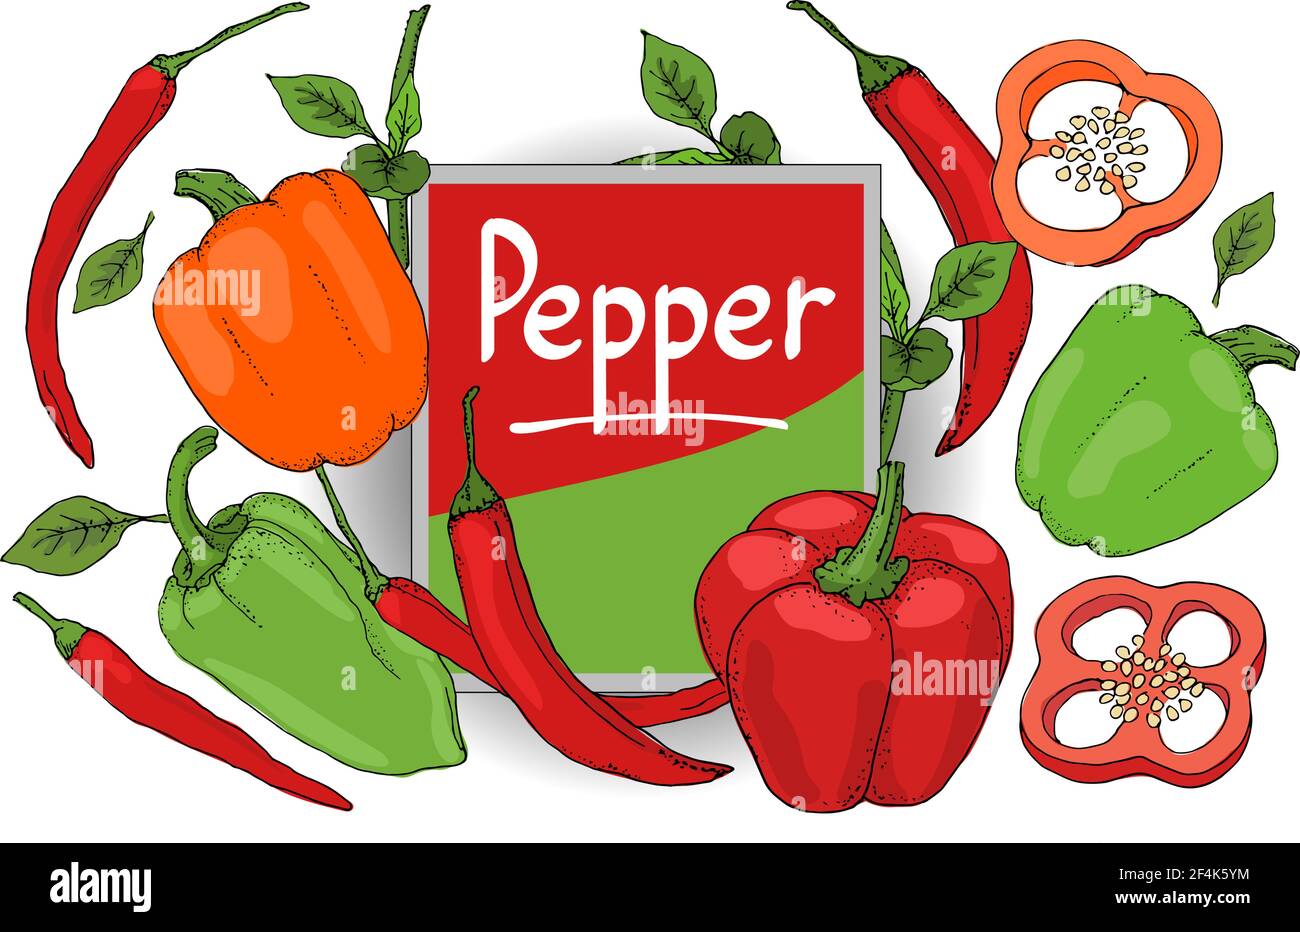 Vector Set mit rotem, grünem, orangenen Pfeffer. Isolierter frischer Pfeffer, Paprika, Chili mit Stielen, Blättern, Samen Stock Vektor